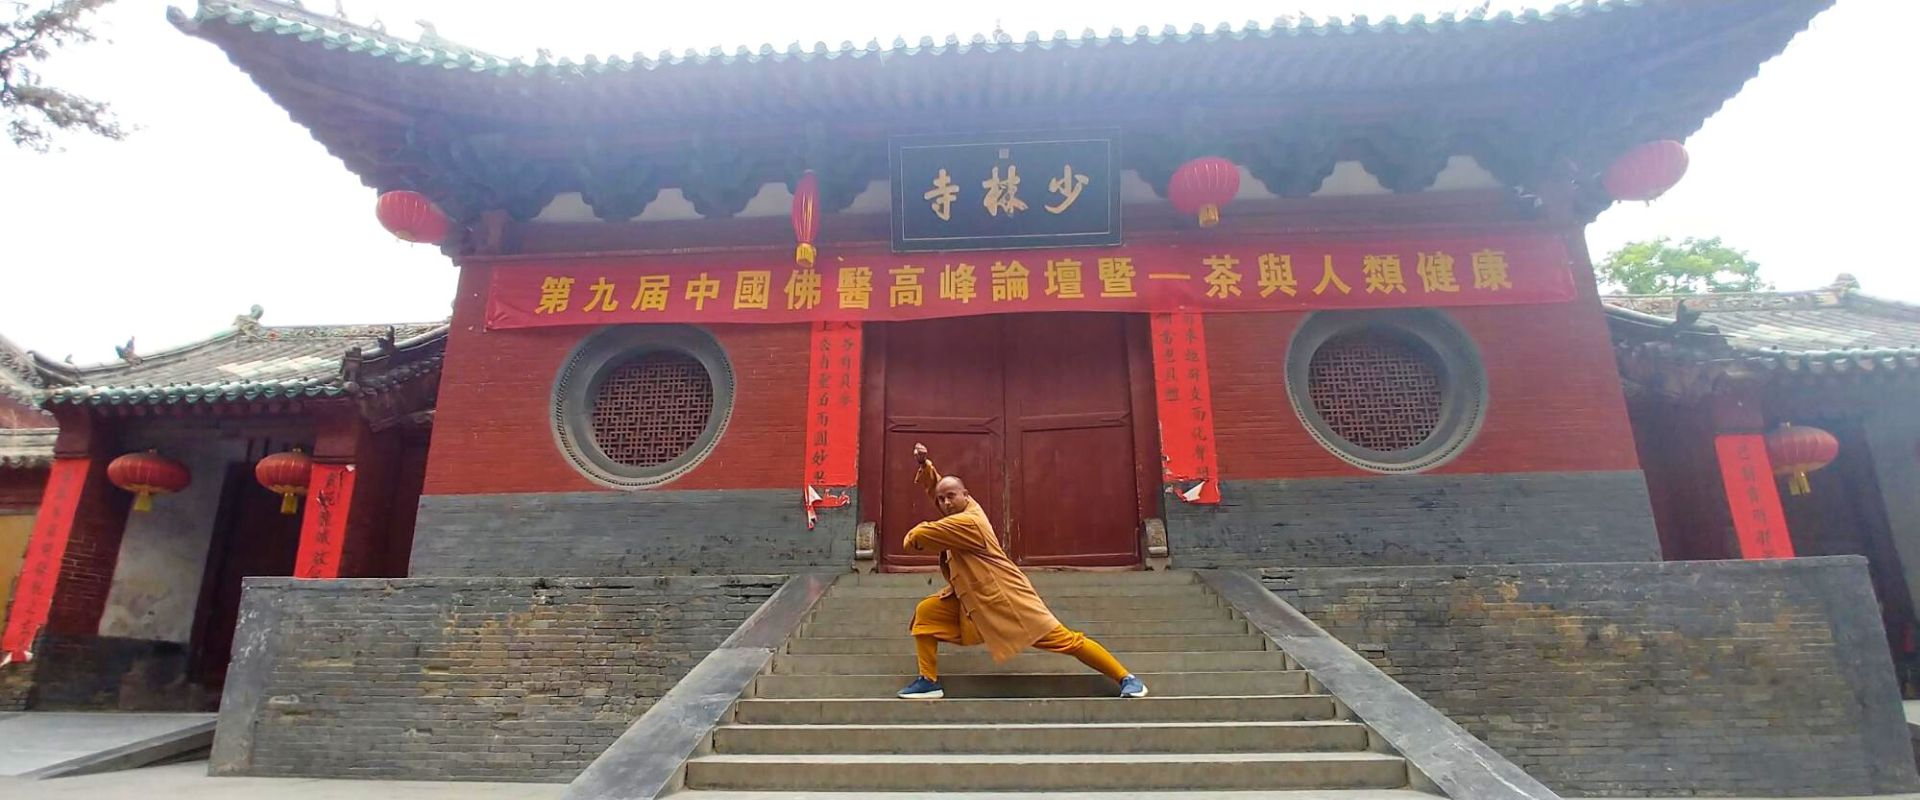 warrior monk training